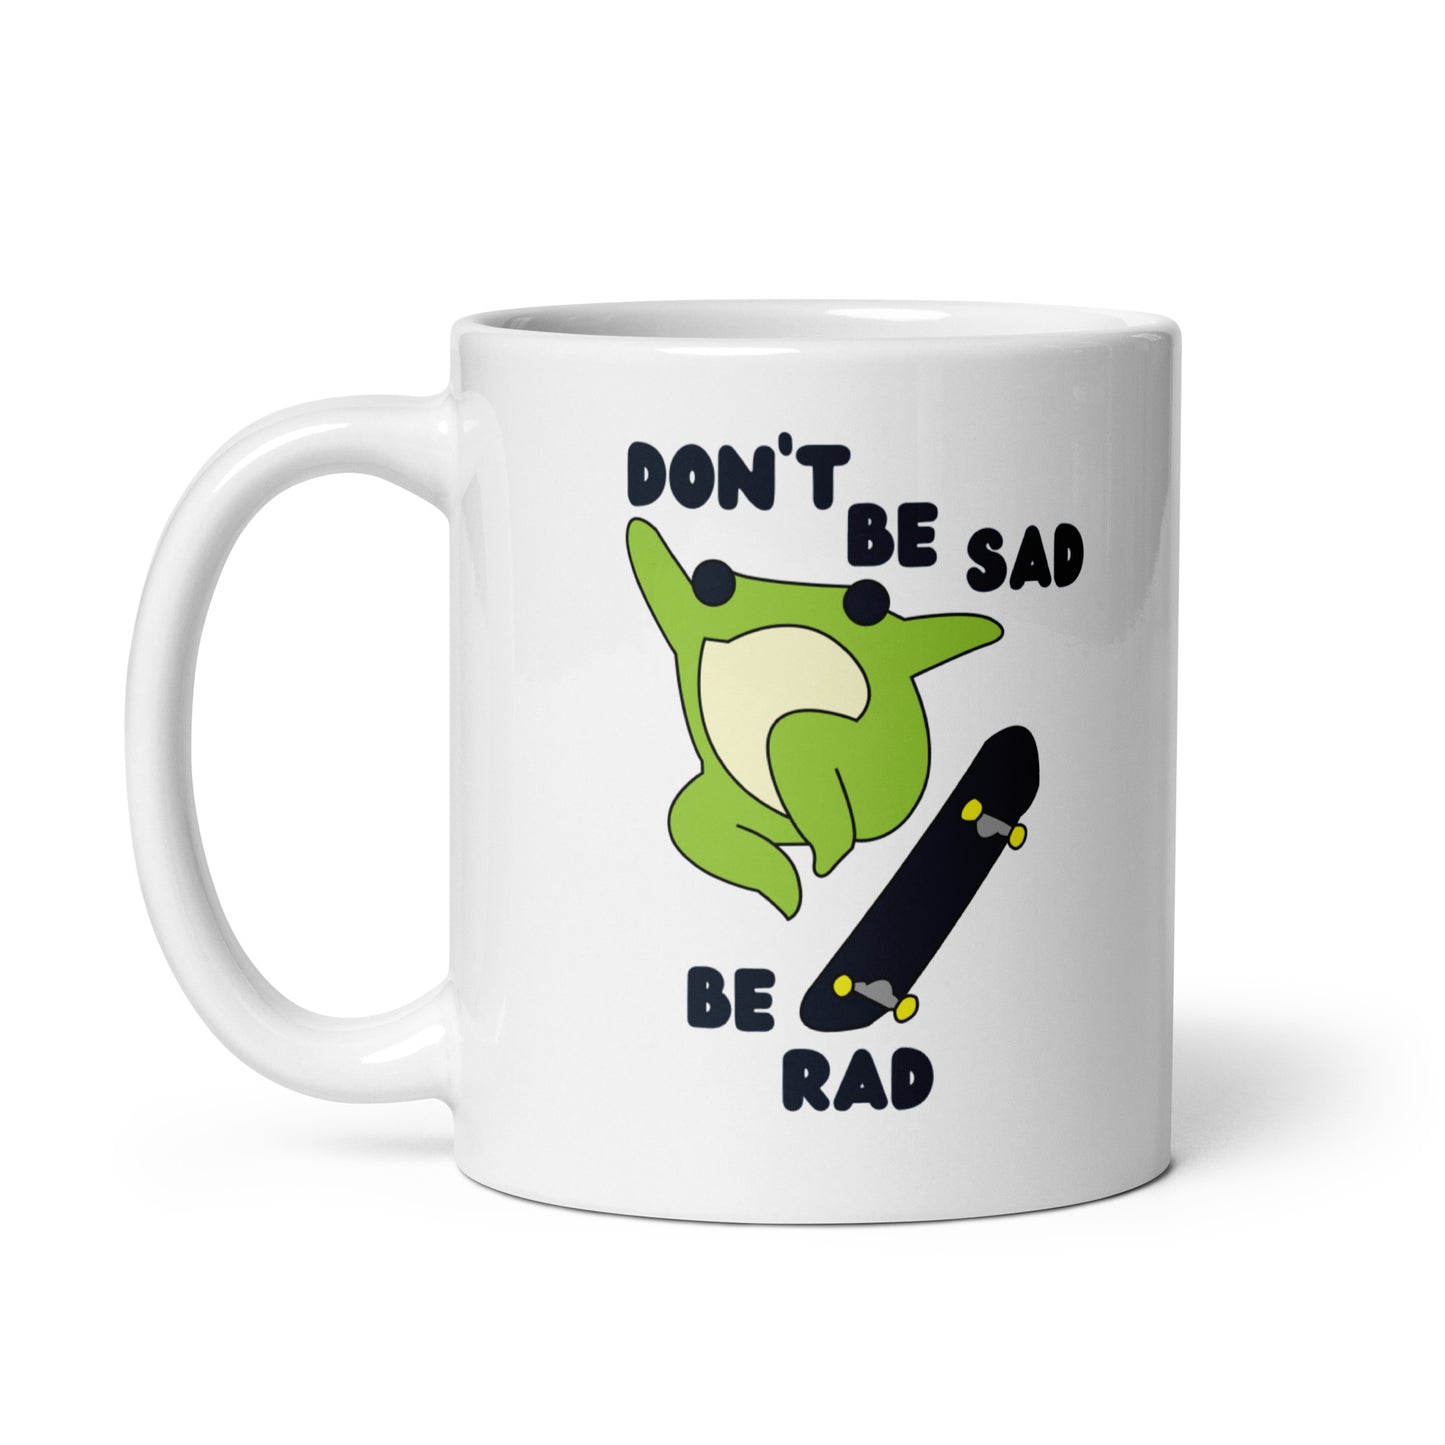 Don't Be Sad Be Rad mug